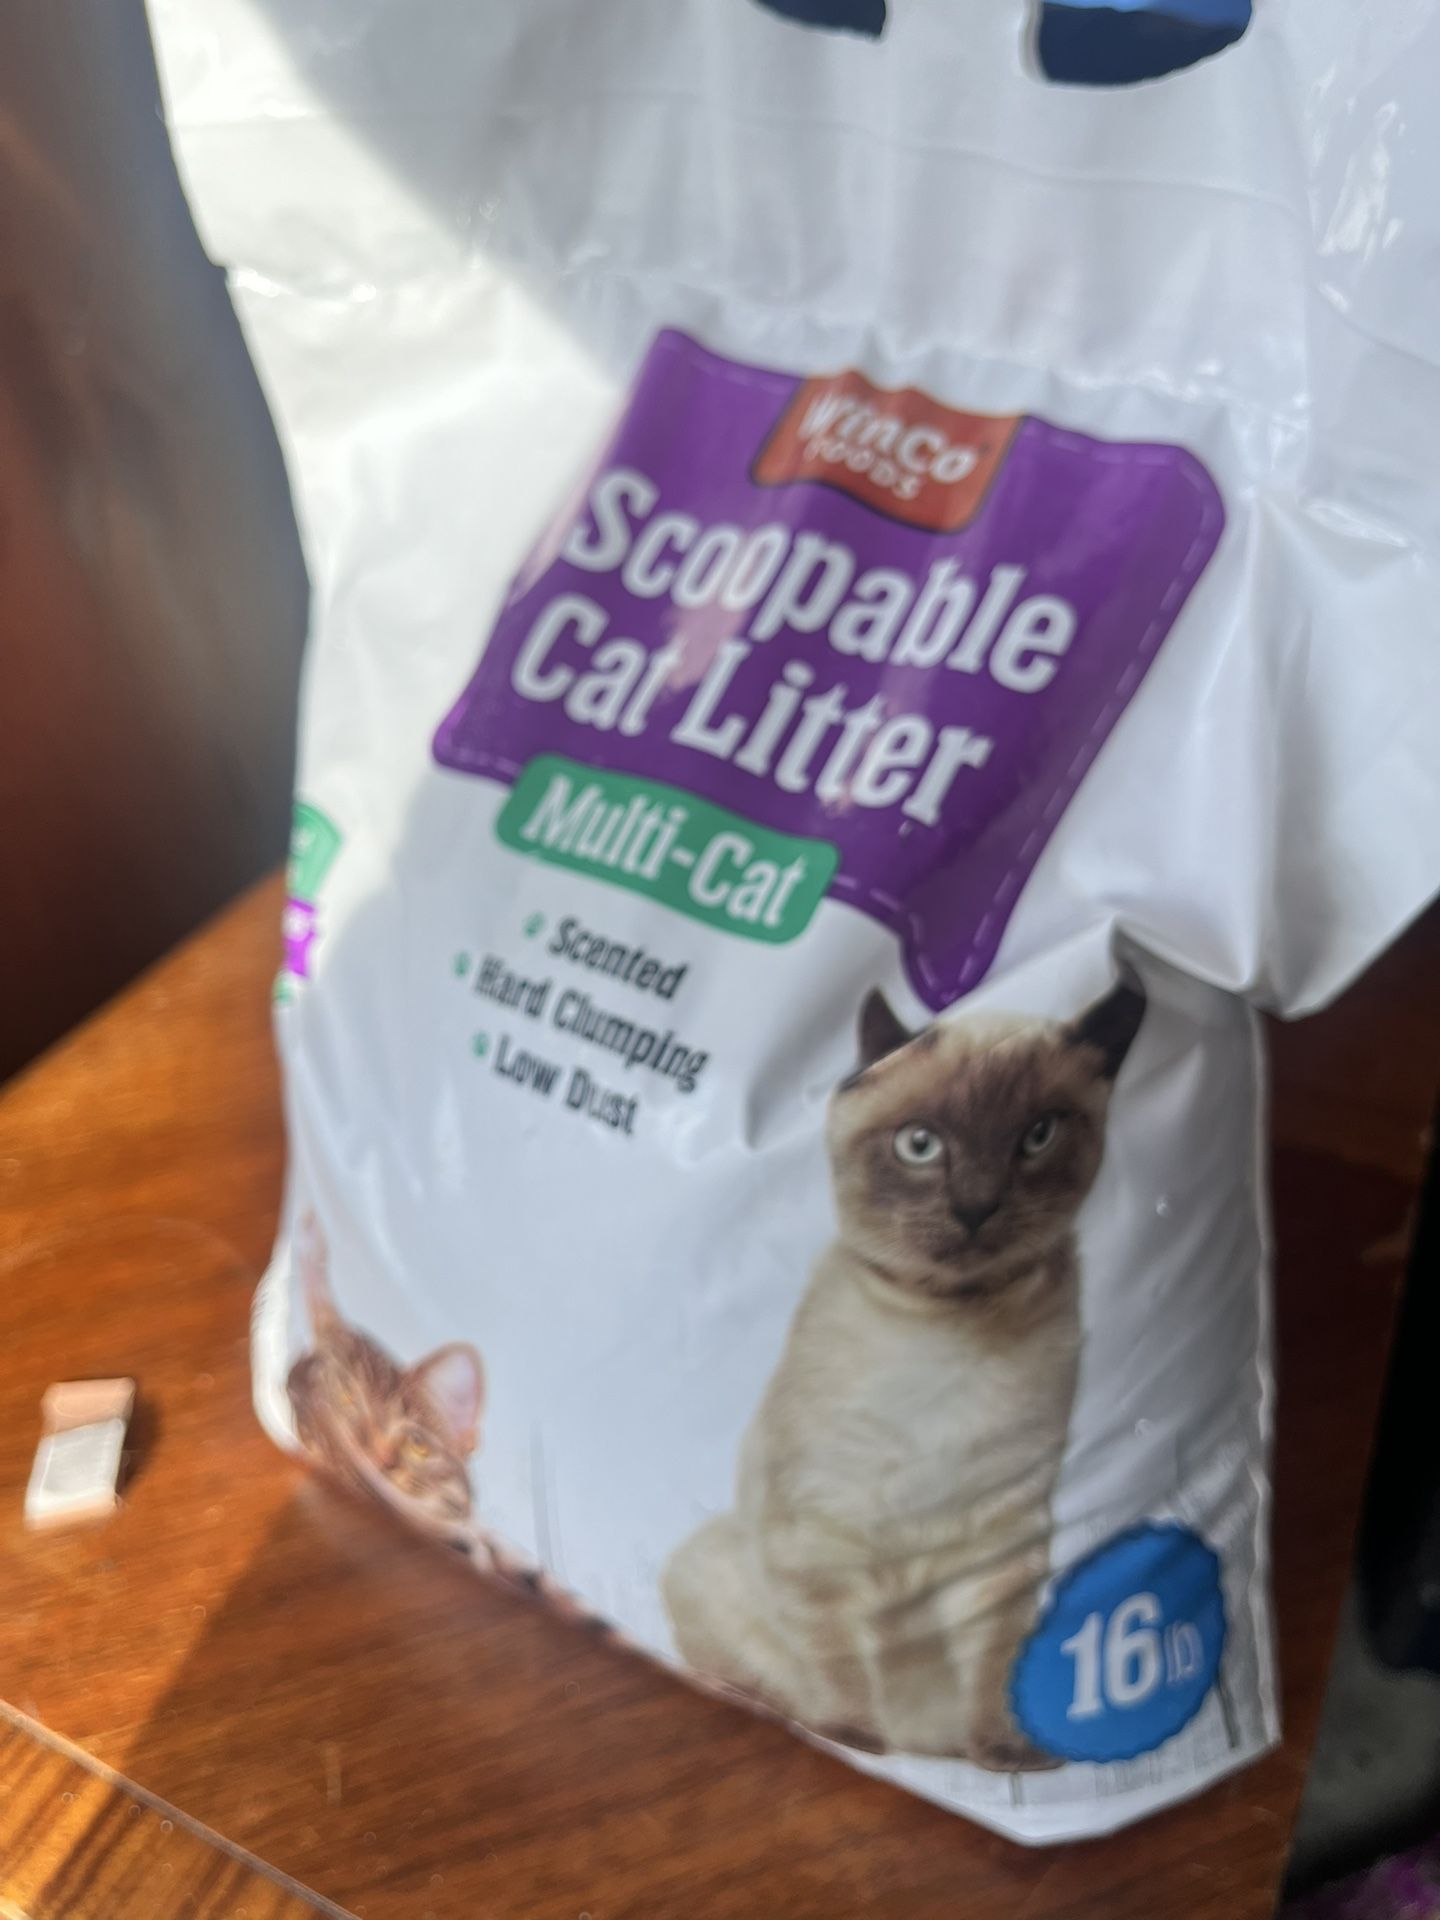 Cat Litter